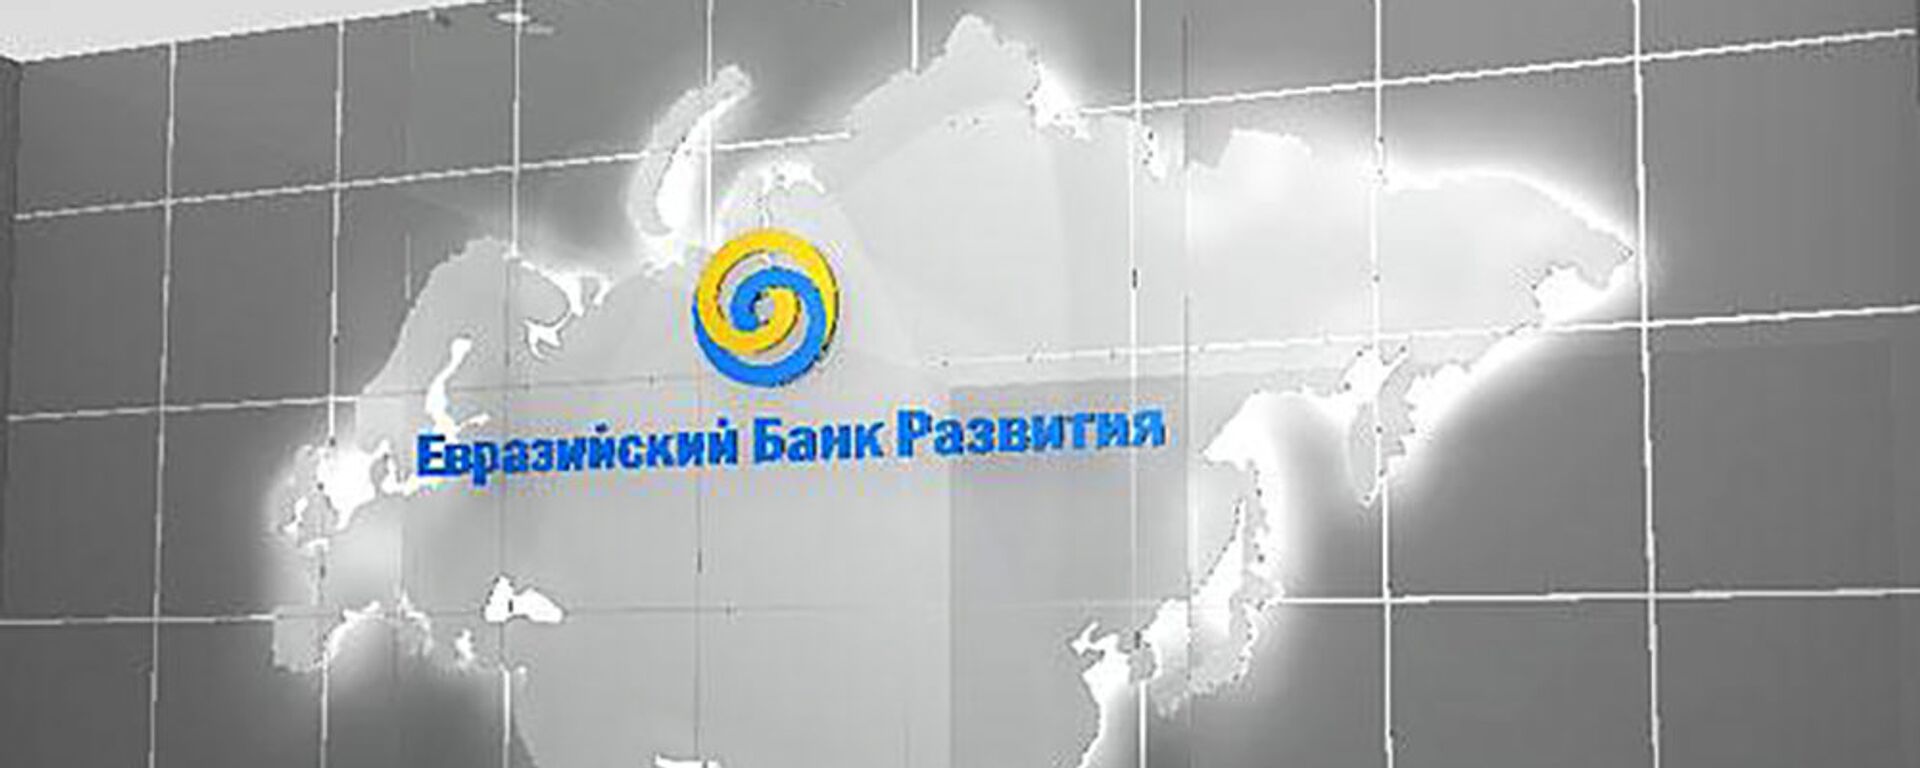 Евразийский банк развития - Sputnik Արմենիա, 1920, 31.08.2021